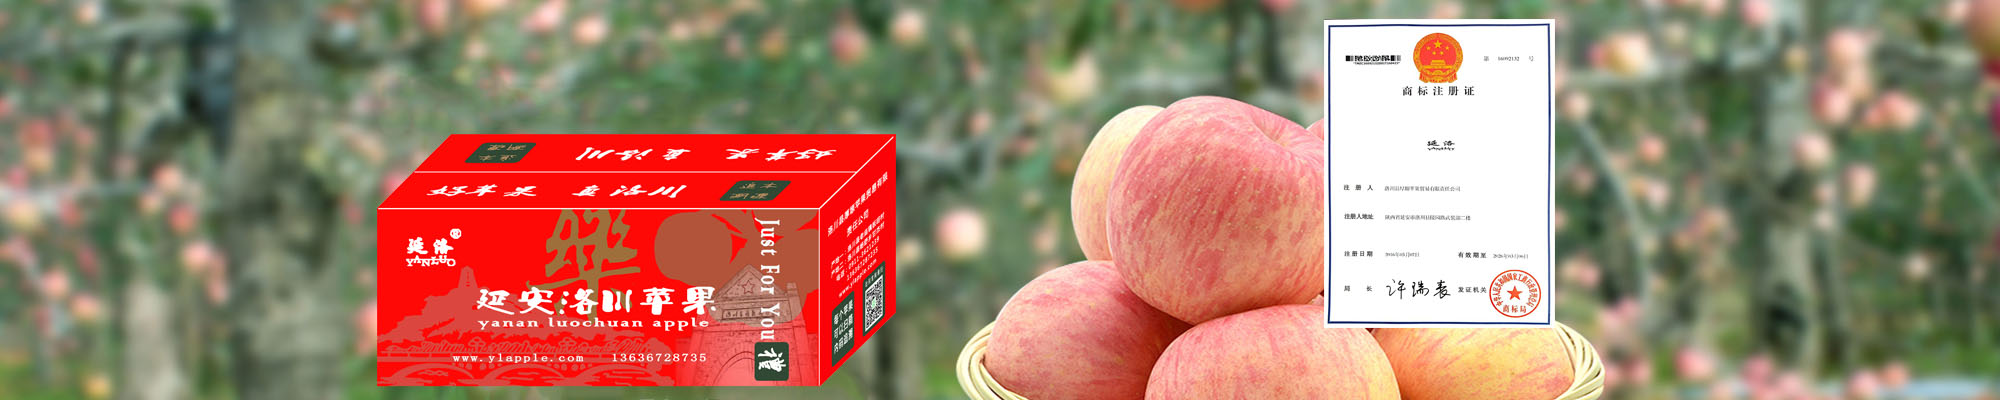 延安洛川苹果正式注册商标